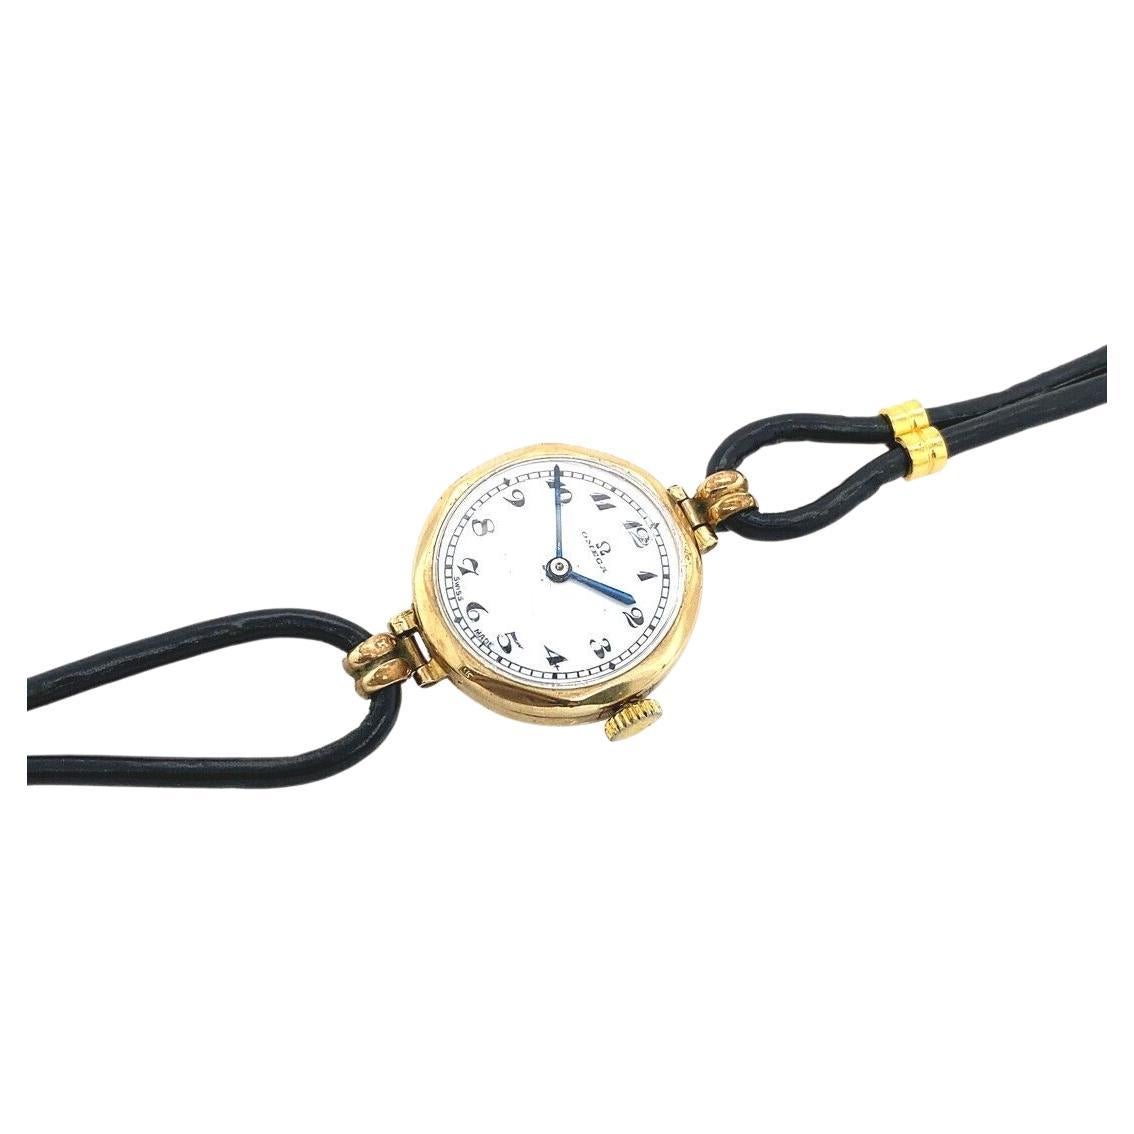 Il s'agit d'une montre vintage classique pour dames. Son cadran rond est plaqué or, le bracelet est en cuir et le boîtier est en or 9ct. Elle comporte 15 rubis et le mouvement est manuel. La montre est en excellent état.

Informations